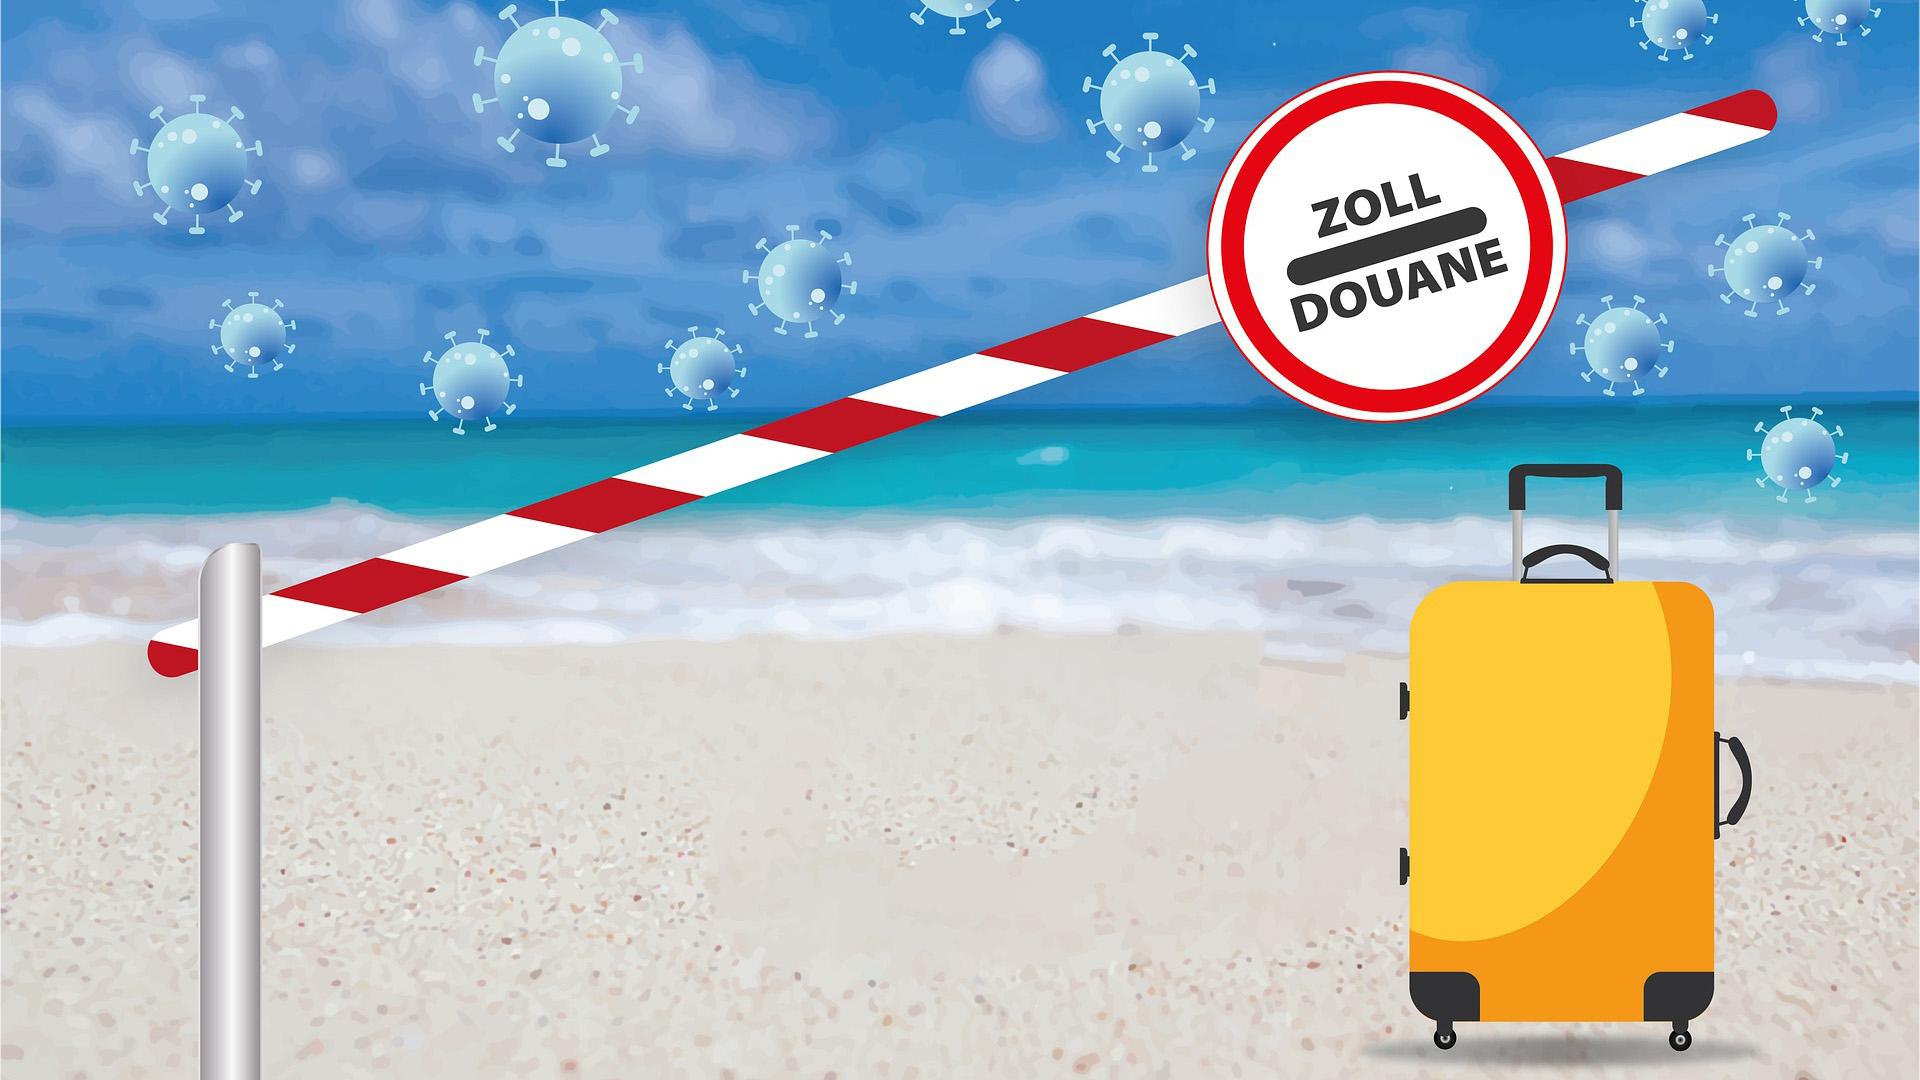 Collage: An einem Strand mit Blick aufs Meer steht ein gelber Koffer, im Himmer schweben Corona-Viren. Im Vordergrund eine halb abgesenkte rotweiße Schranke mit dem Schildd "Zoll".